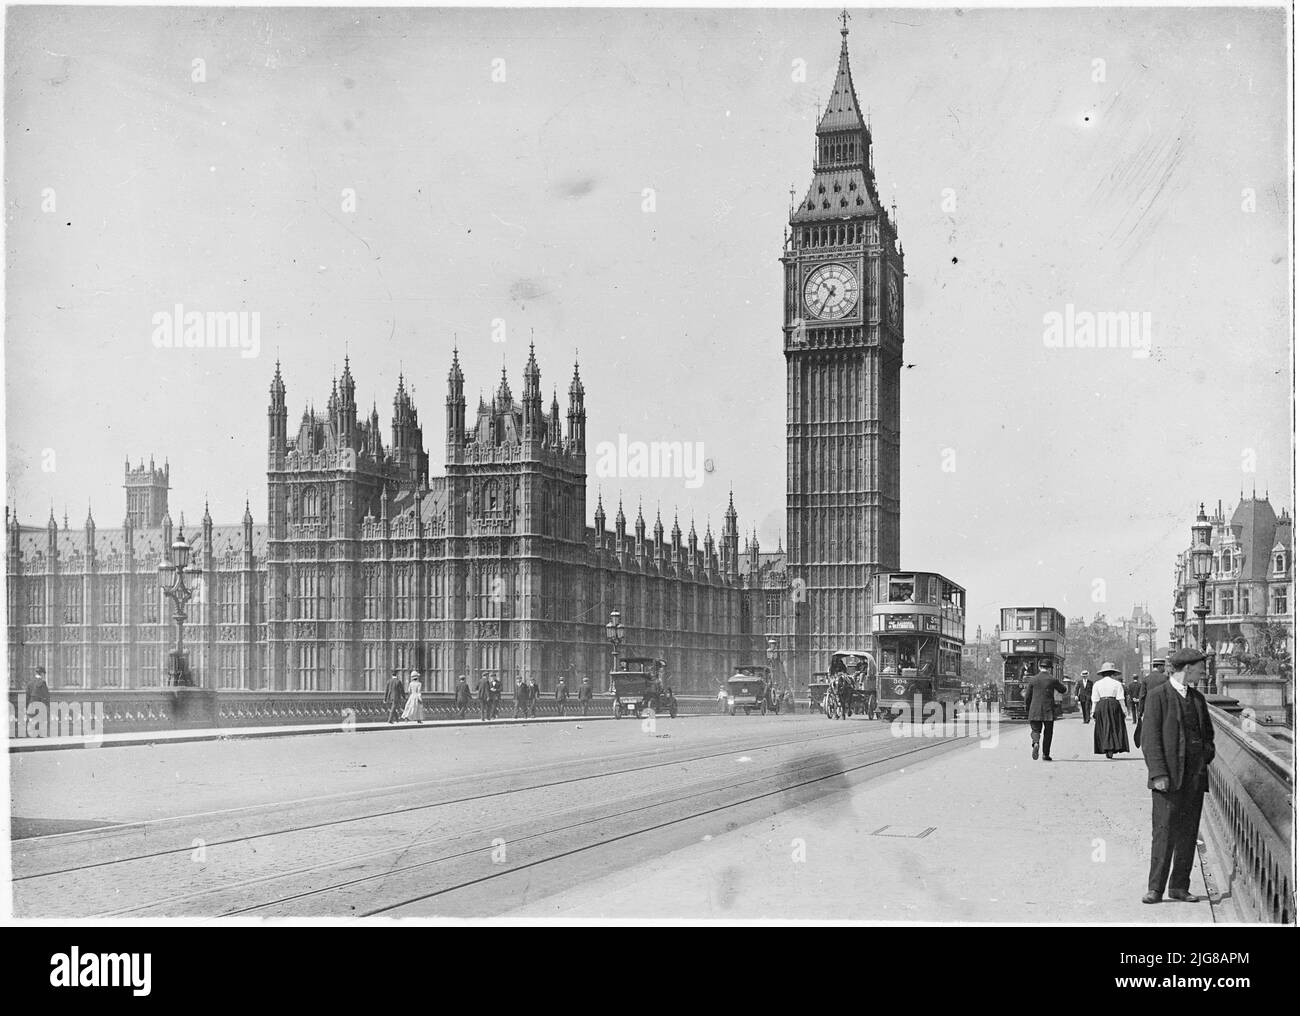 Palace of Westminster, Parliament Square, Westminster, City of Westminster, Greater London Authority, 1911. Der Palast von Westminster von der Westminster Bridge aus gesehen, mit Fußgängern und Kraftfahrzeugen im Vordergrund. Stockfoto